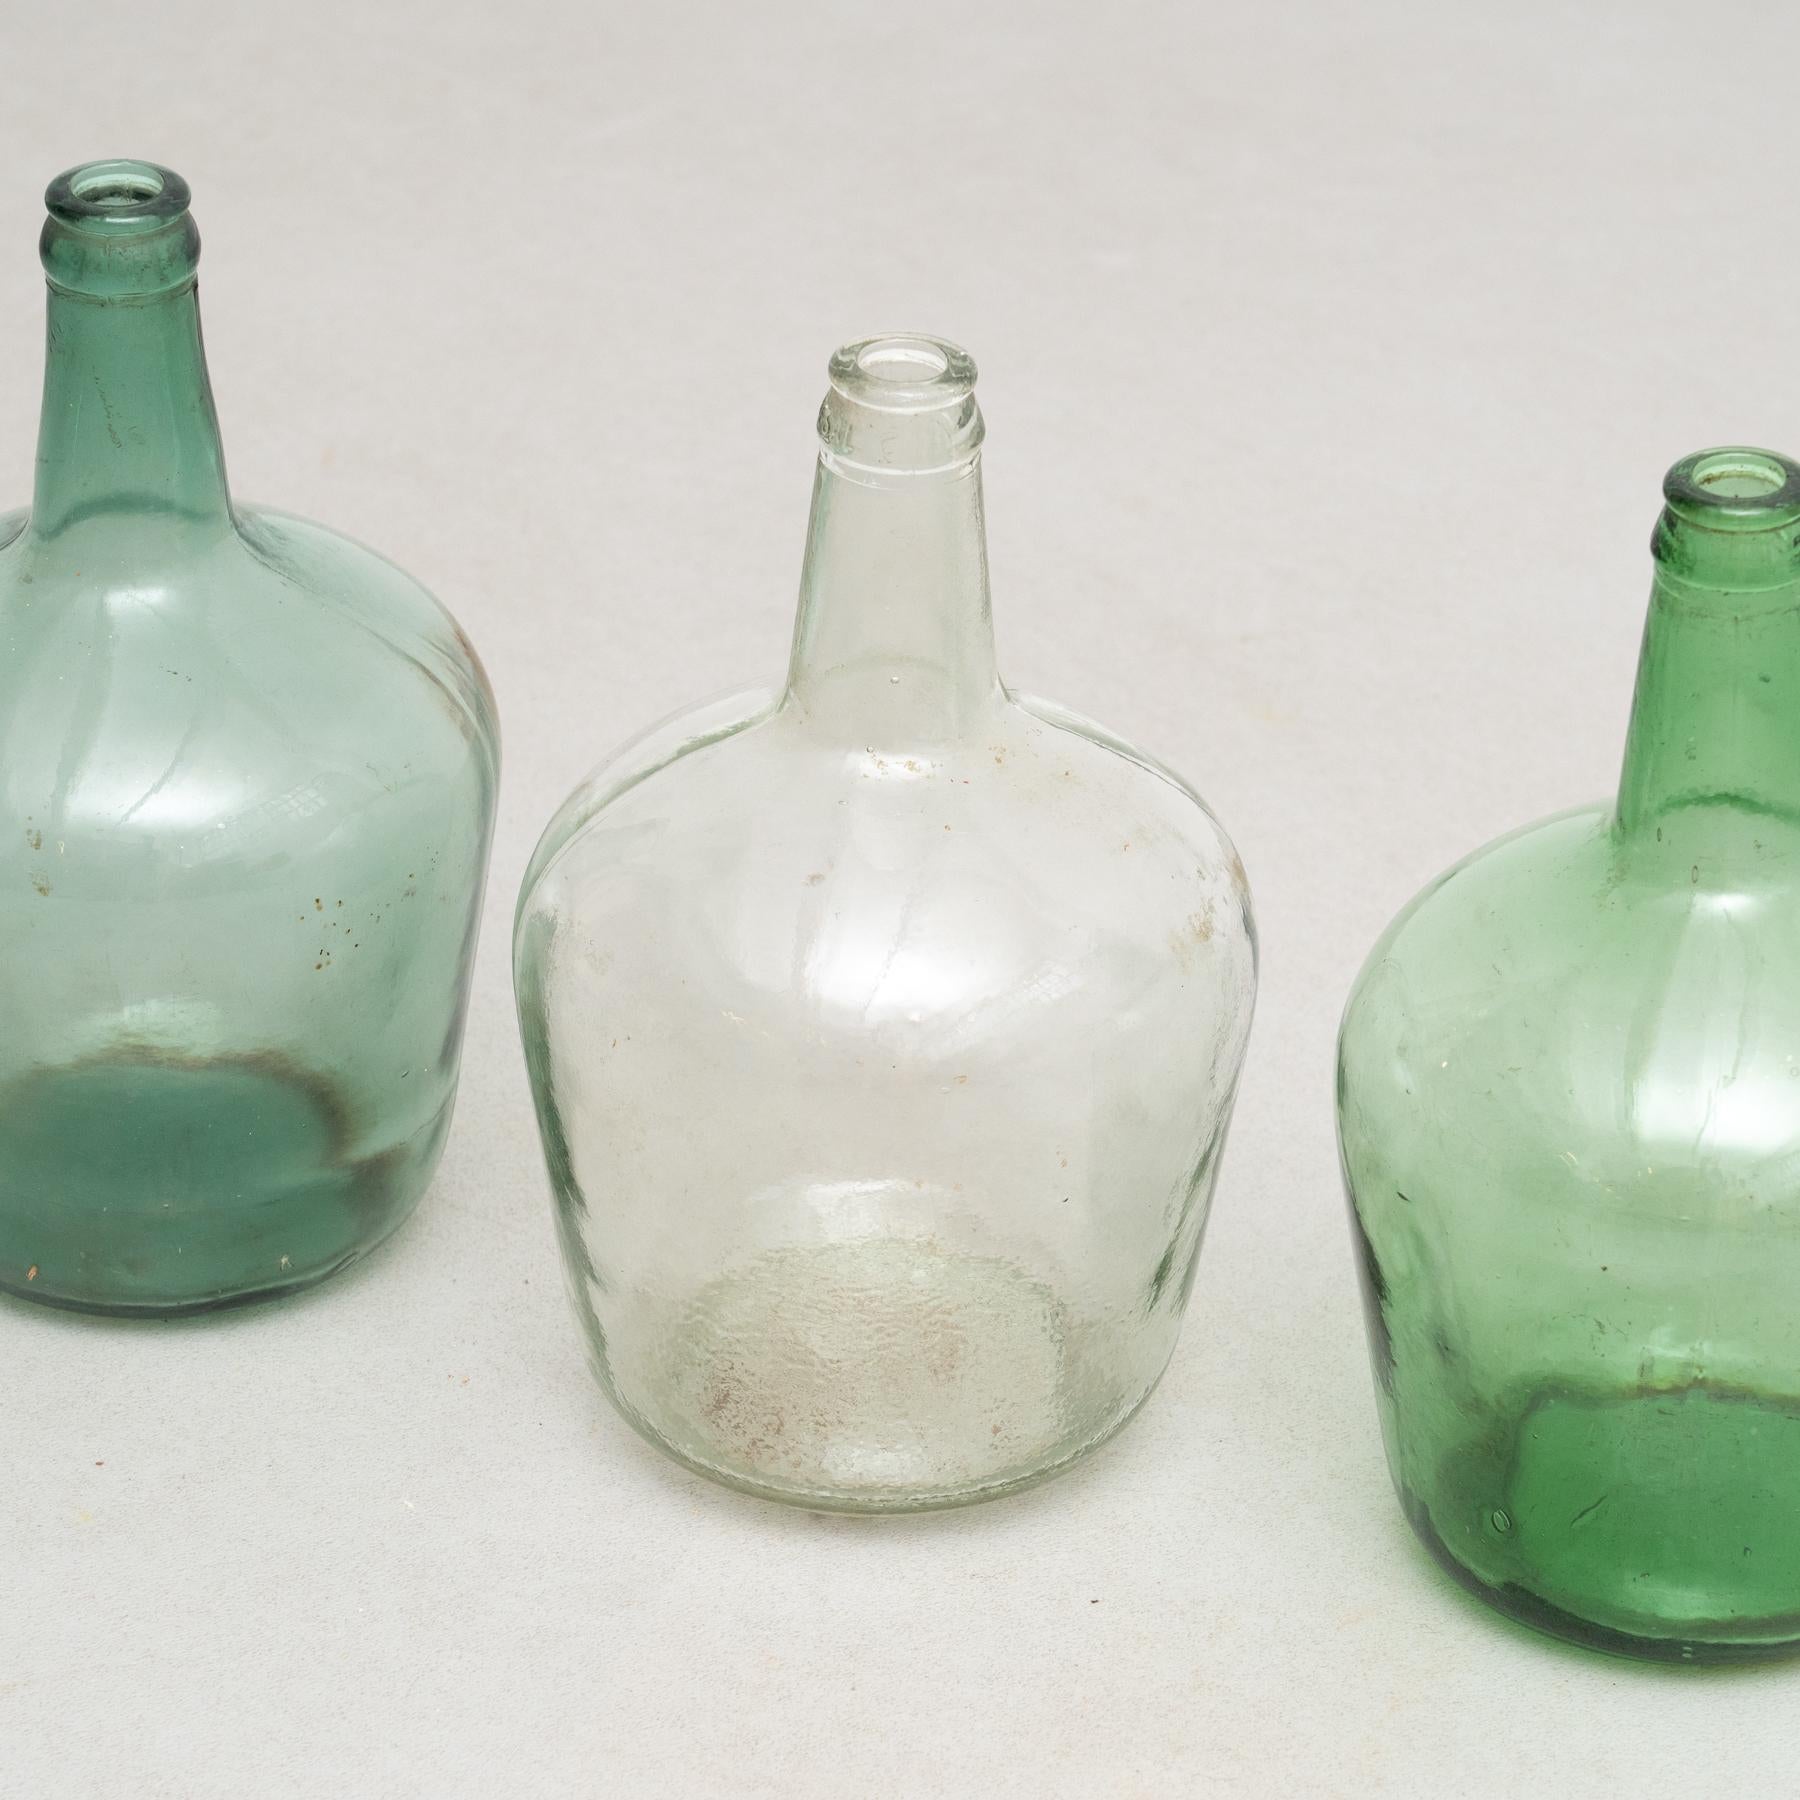 viresa glass bottle history